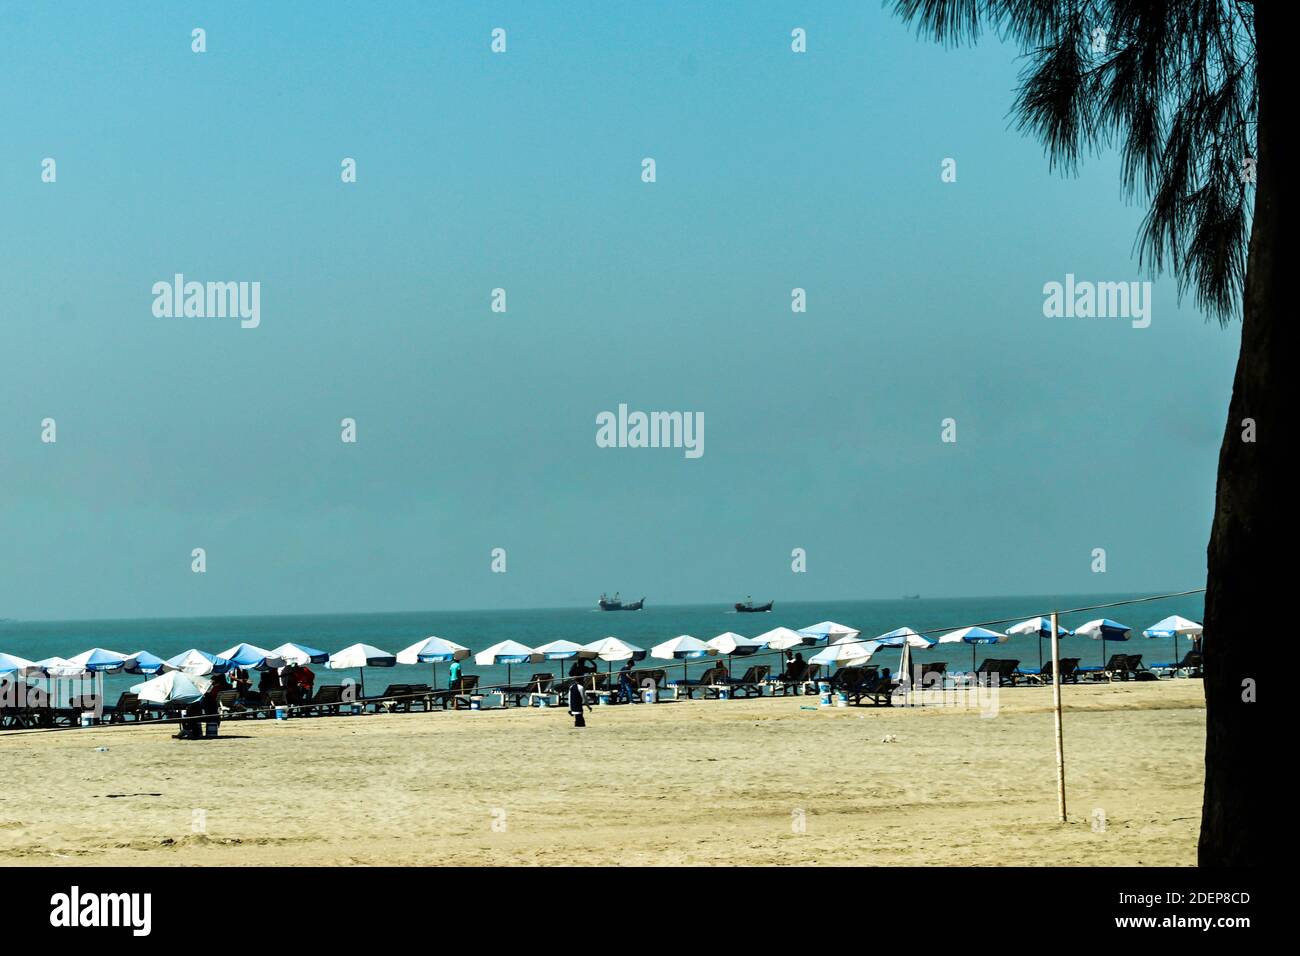 Une longue rangée de parasols sur laquelle les touristes peuvent s'asseoir la plage de la mer Banque D'Images